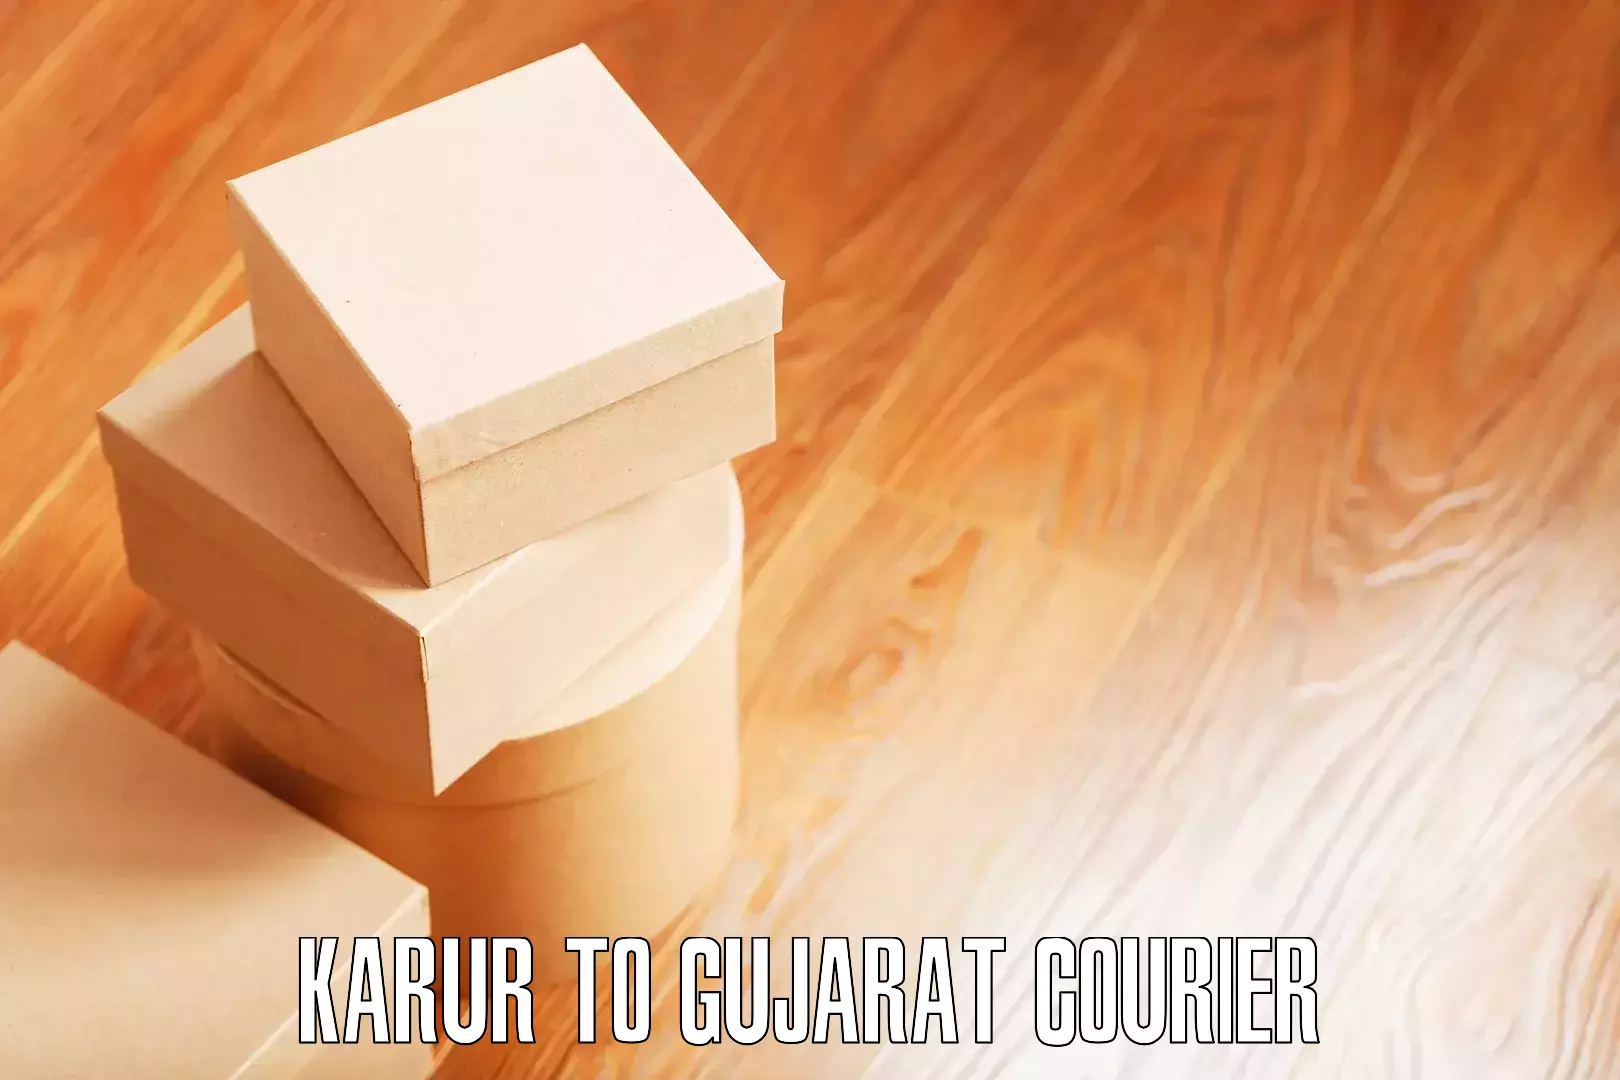 Efficient furniture shifting Karur to Gujarat